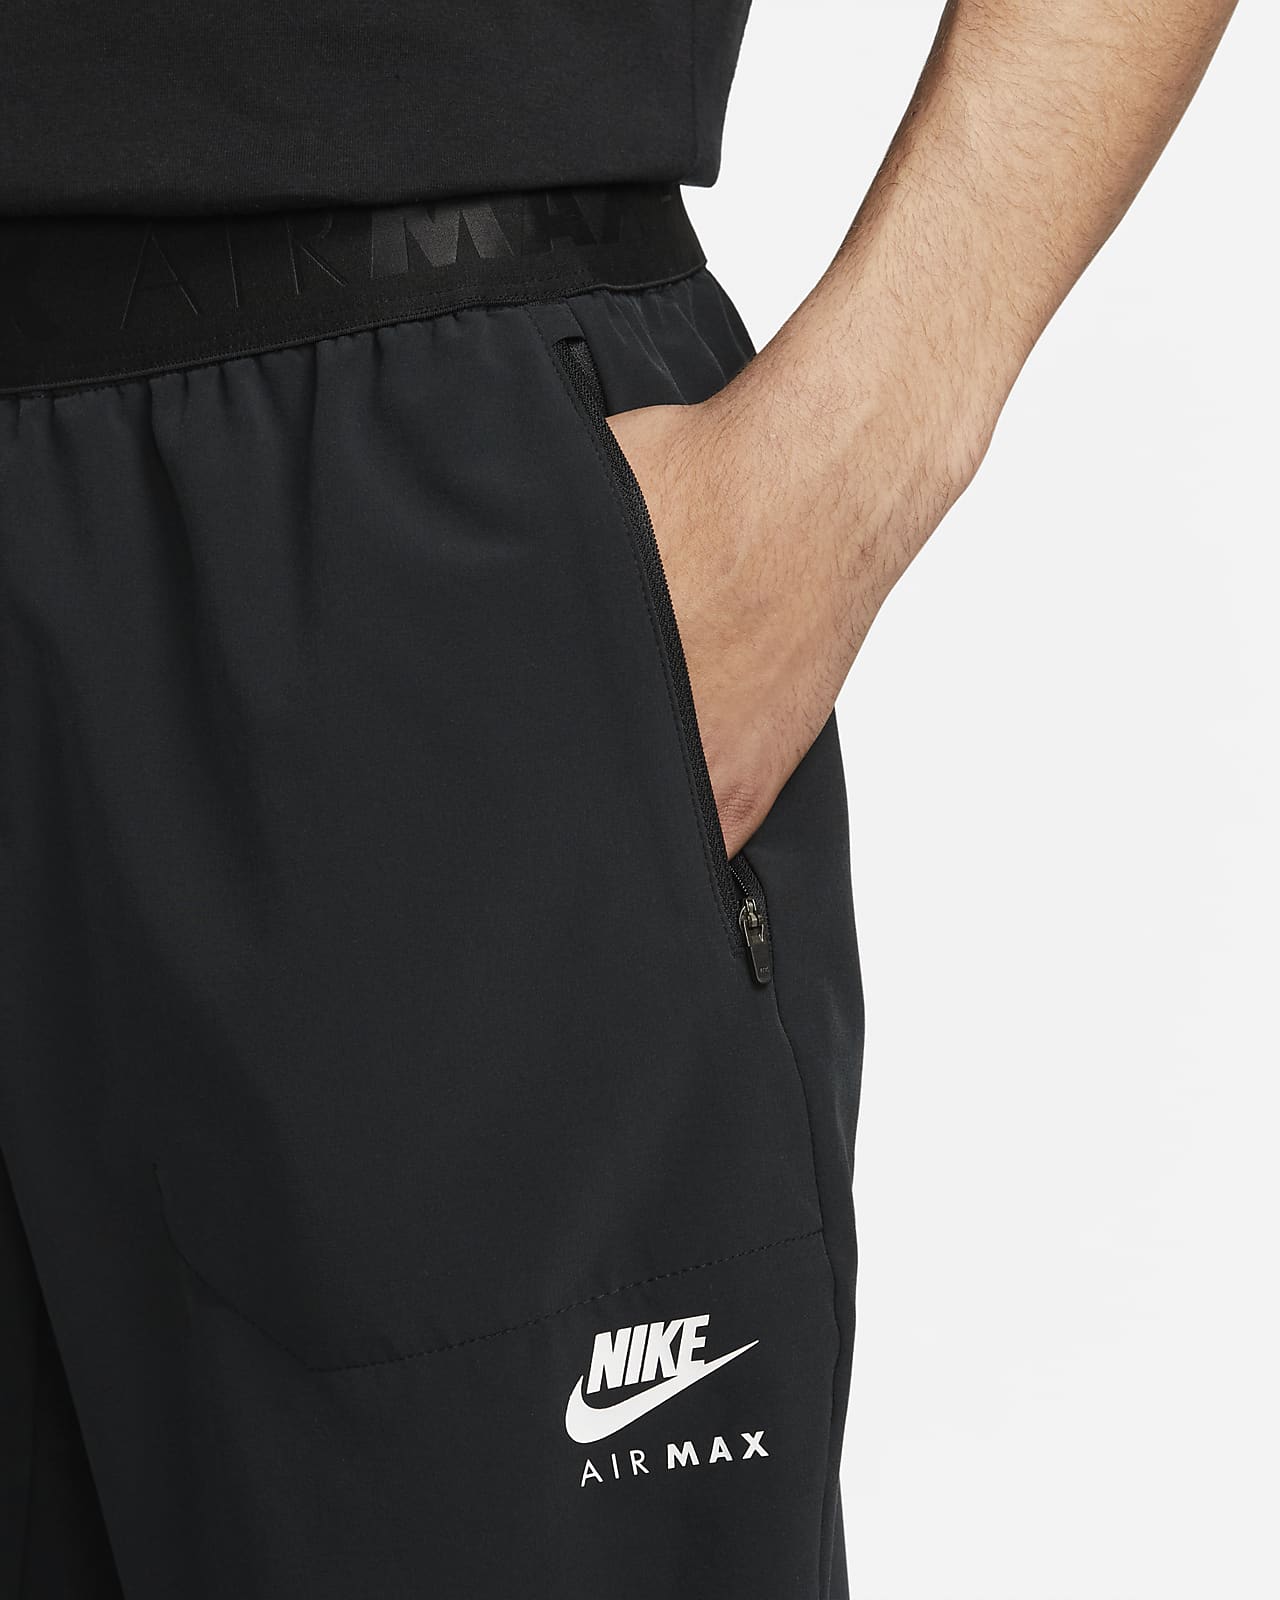 Nike Air Max Men's Trousers. Nike LU